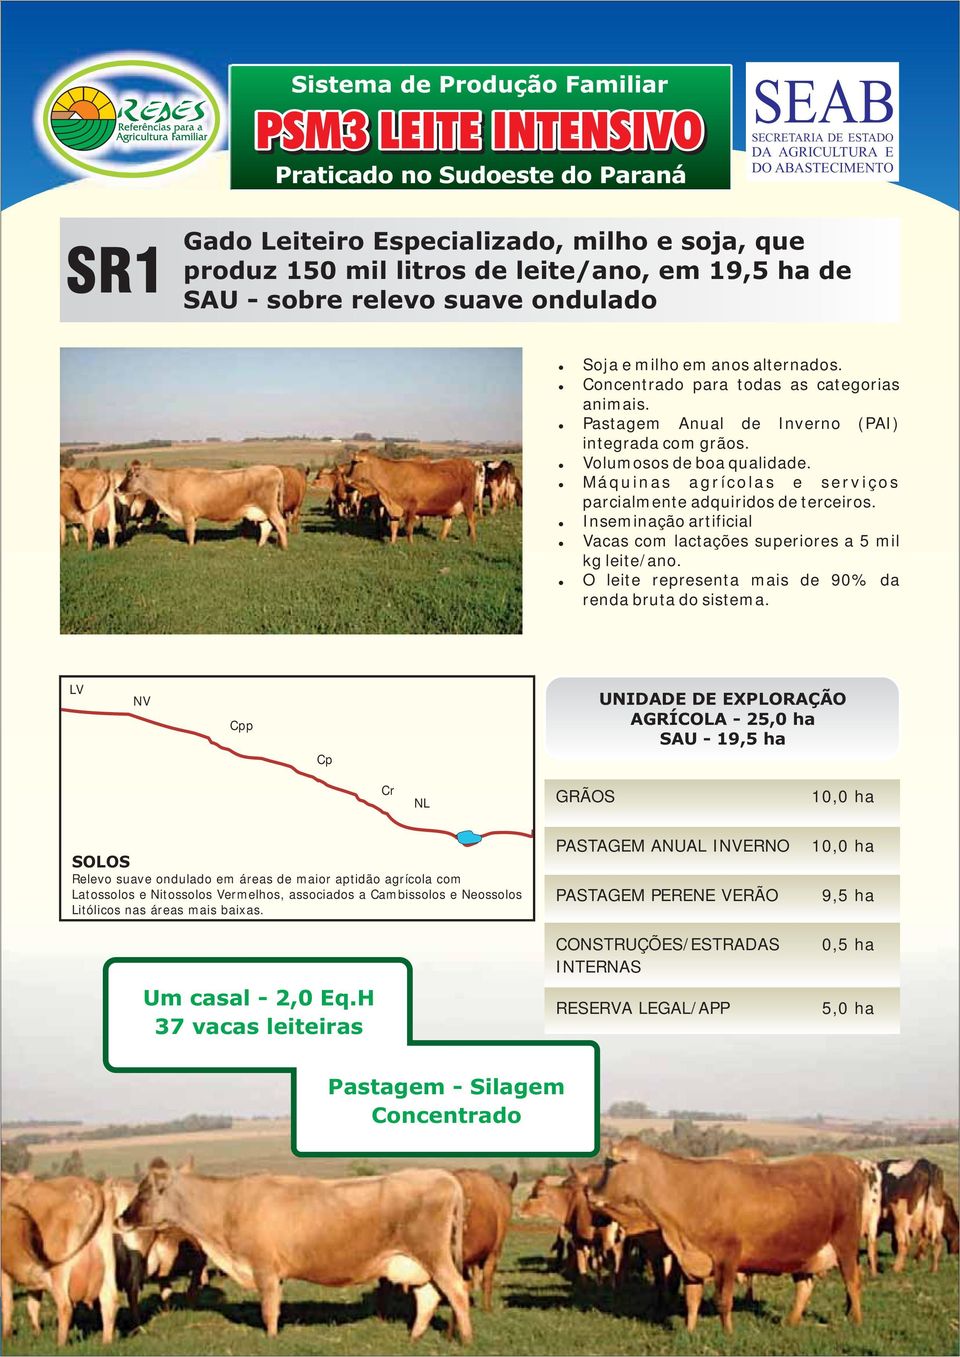 Máquinas agrícolas e serviços parcialmente adquiridos de terceiros. Inseminação artificial Vacas com lactações superiores a 5 mil kg leite/ano.